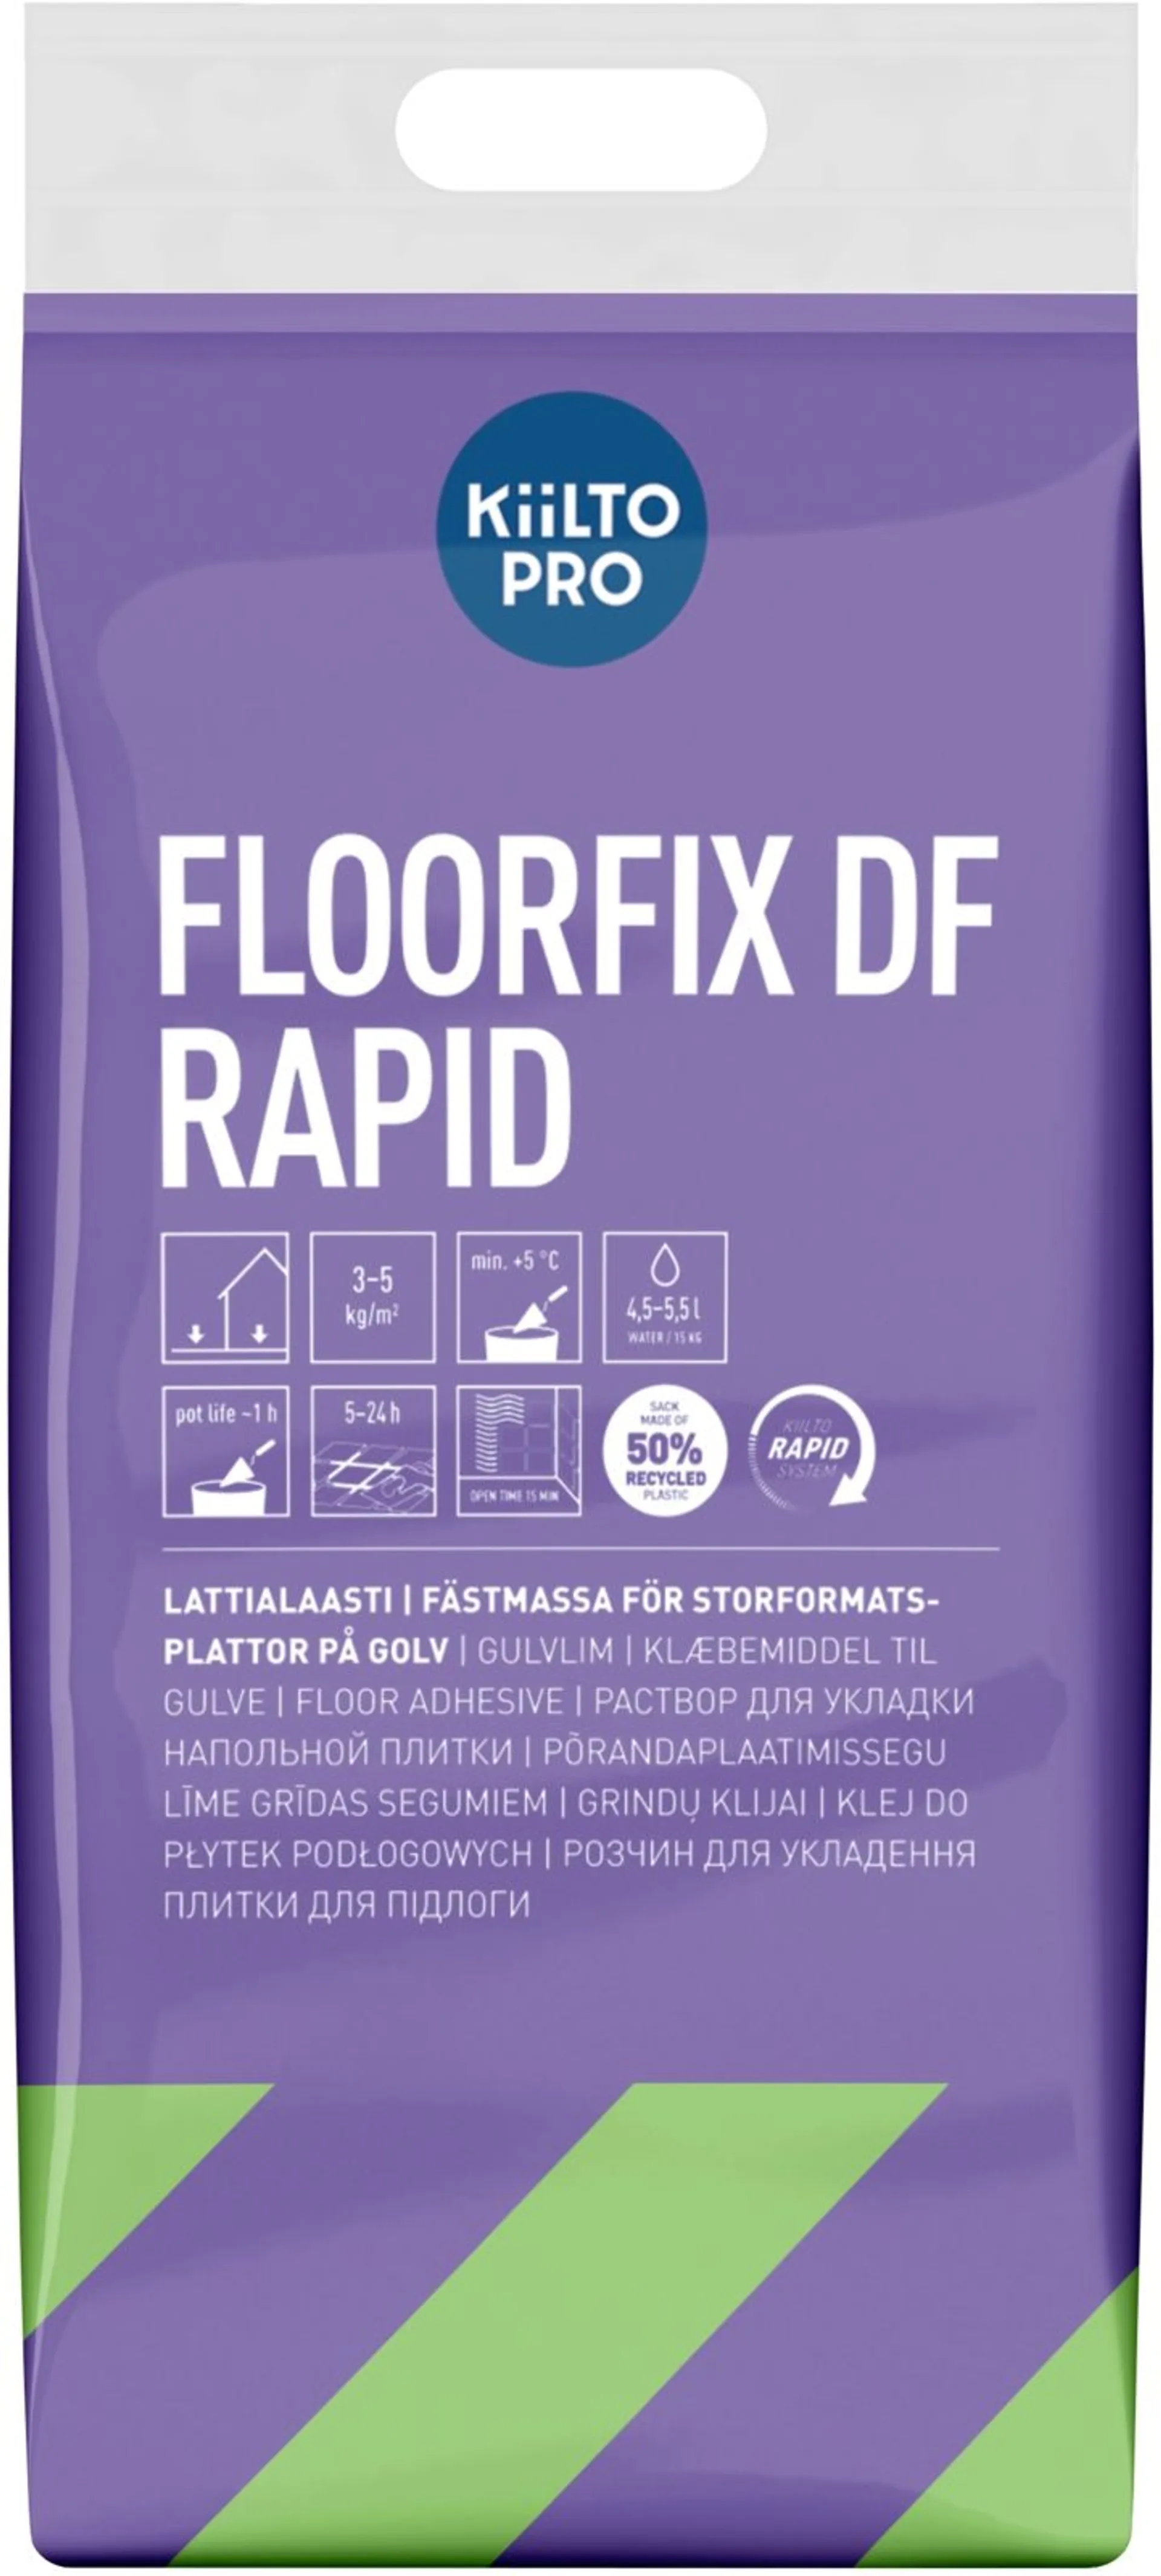 Kiilto Floorfix DF Rapid lattialaasti 15 kg